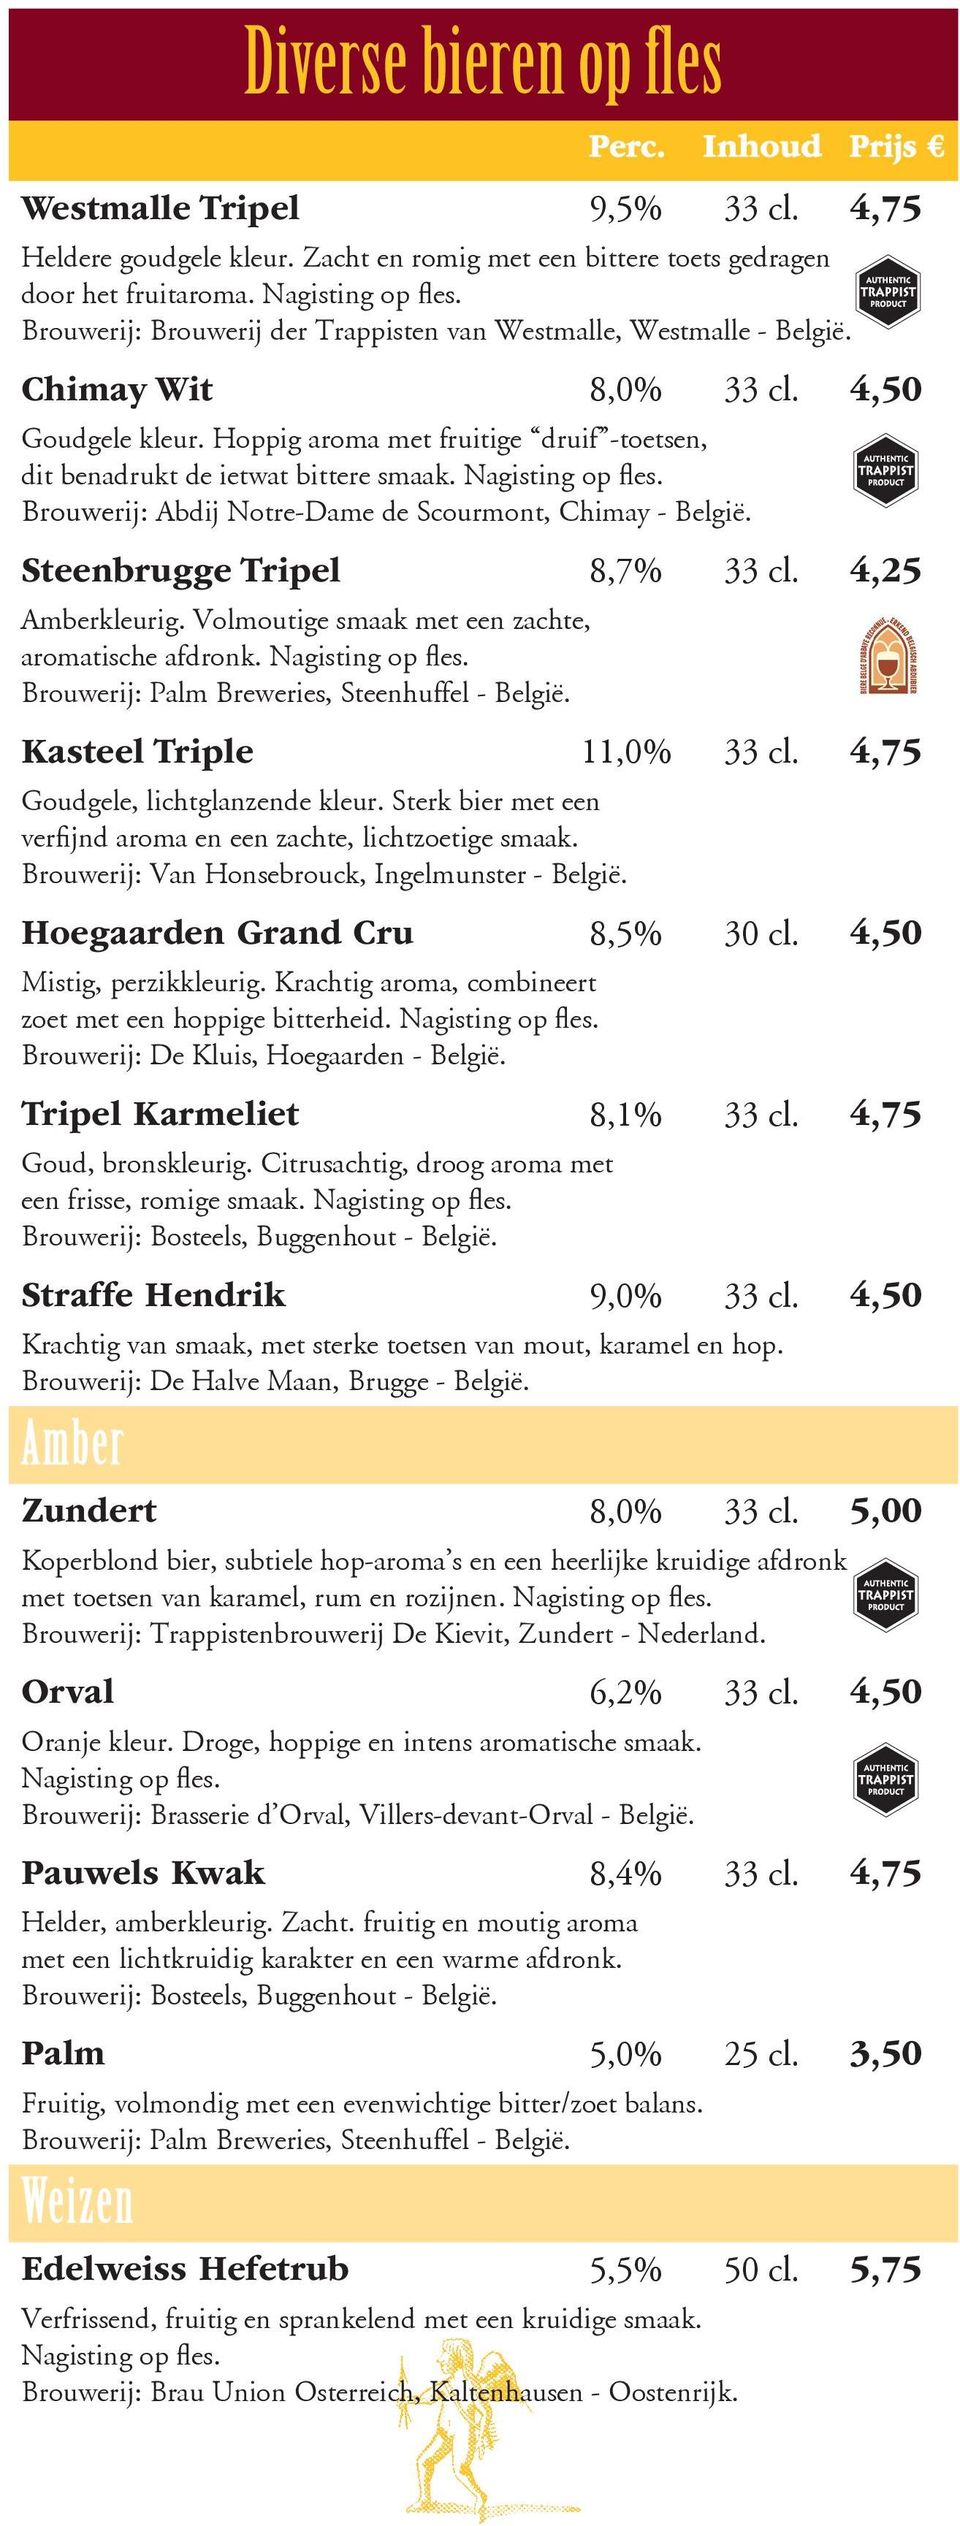 Nagisting op fles. Brouwerij: Abdij Notre-Dame de Scourmont, Chimay - België. Steenbrugge Tripel 8,7% 33 cl. 4,25 Amberkleurig. Volmoutige smaak met een zachte, aromatische afdronk. Nagisting op fles.